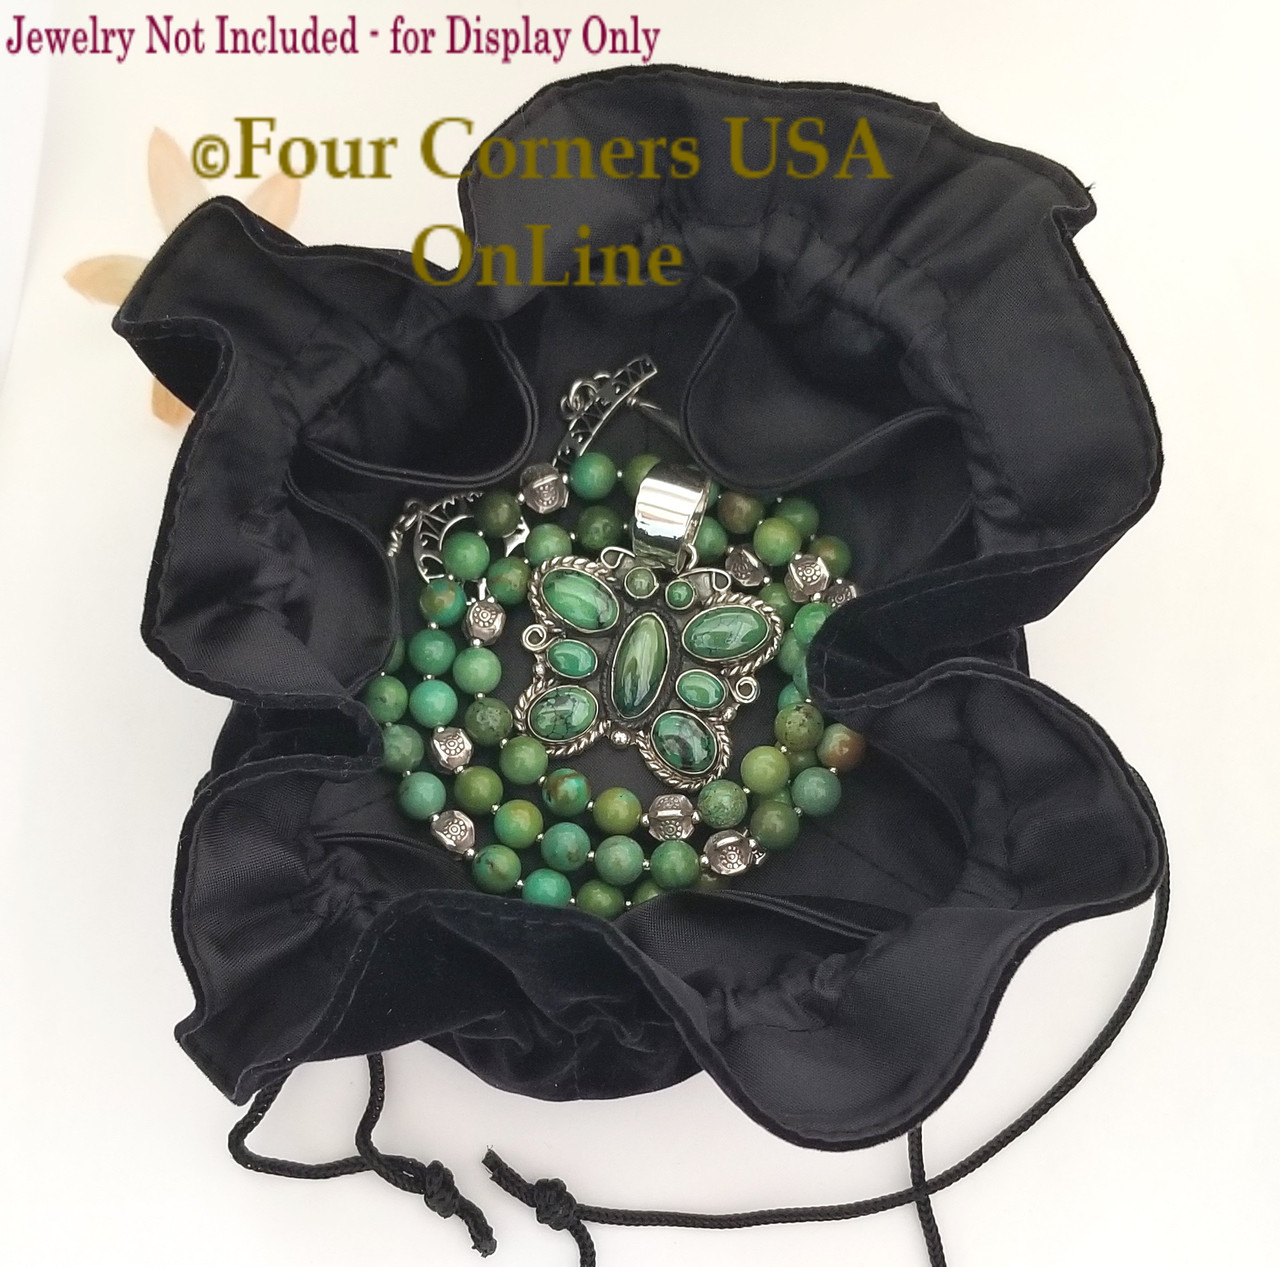 Black Velvet Drawstring Jewelry Travel Gift Pouch 6 Inside Pockets